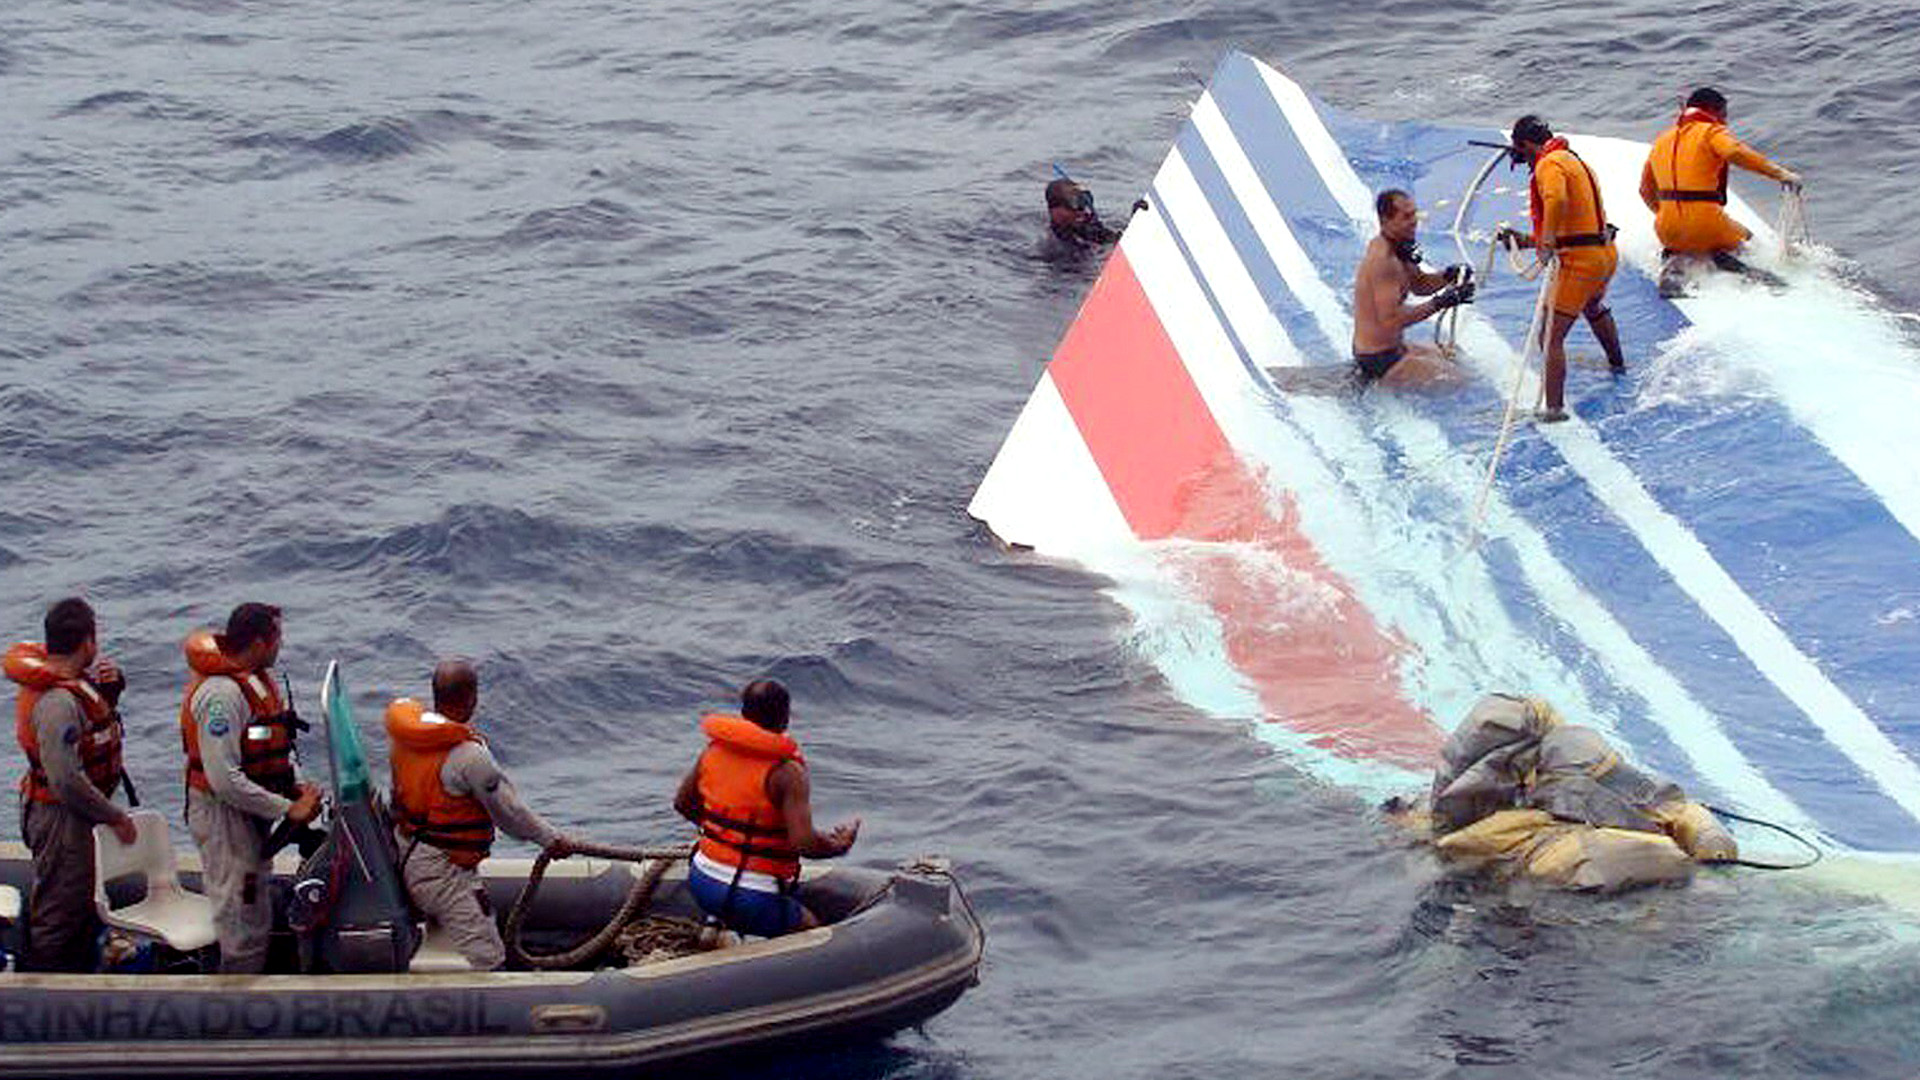 Ein Wrackteil der abgestürzten Air-France-Maschine AF447 wird von einem Rettungsteam der brasilianischen Marine im Atlantik geborgen (Archivfoto vom 08.06.2009). | Bildquelle: picture alliance / dpa